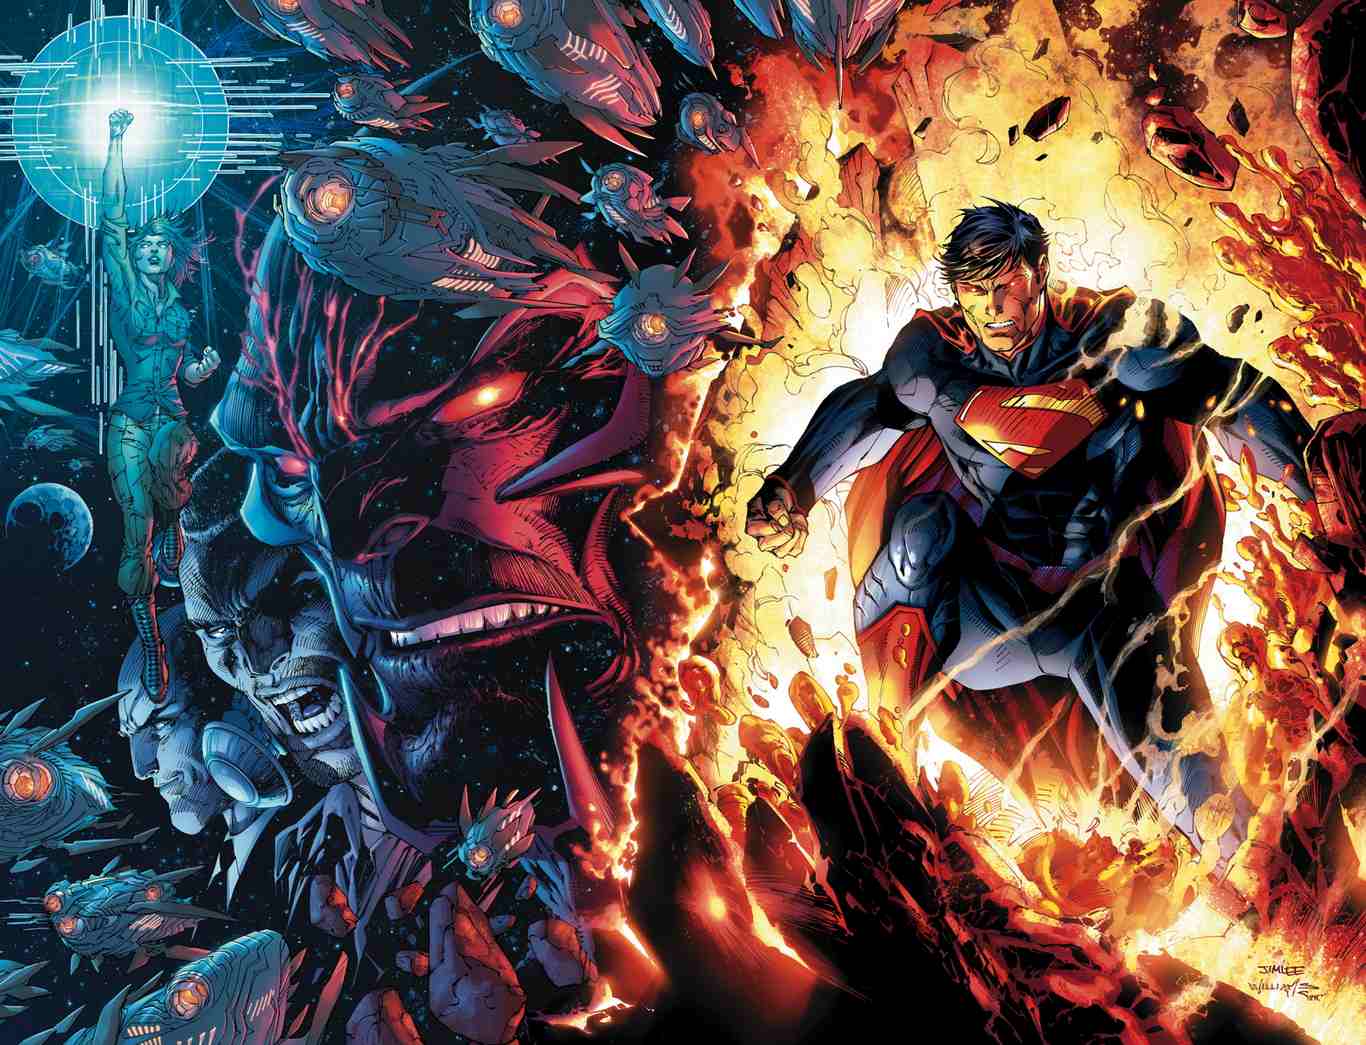 Cùng trở thành siêu anh hùng với Avatar Superman trong Liên Quân Mobile! Với đầy đủ những đặc tính của một người hùng phi thường, việc sở hữu một Avatar Superman trong Liên Quân Mobile sẽ giúp bạn trở thành một trong những người chiến đấu mạnh nhất. Dù bạn đang là fan của Superman hay không, hãy đến Liên Quân Mobile để trải nghiệm và thử sức với siêu năng lực của mình.